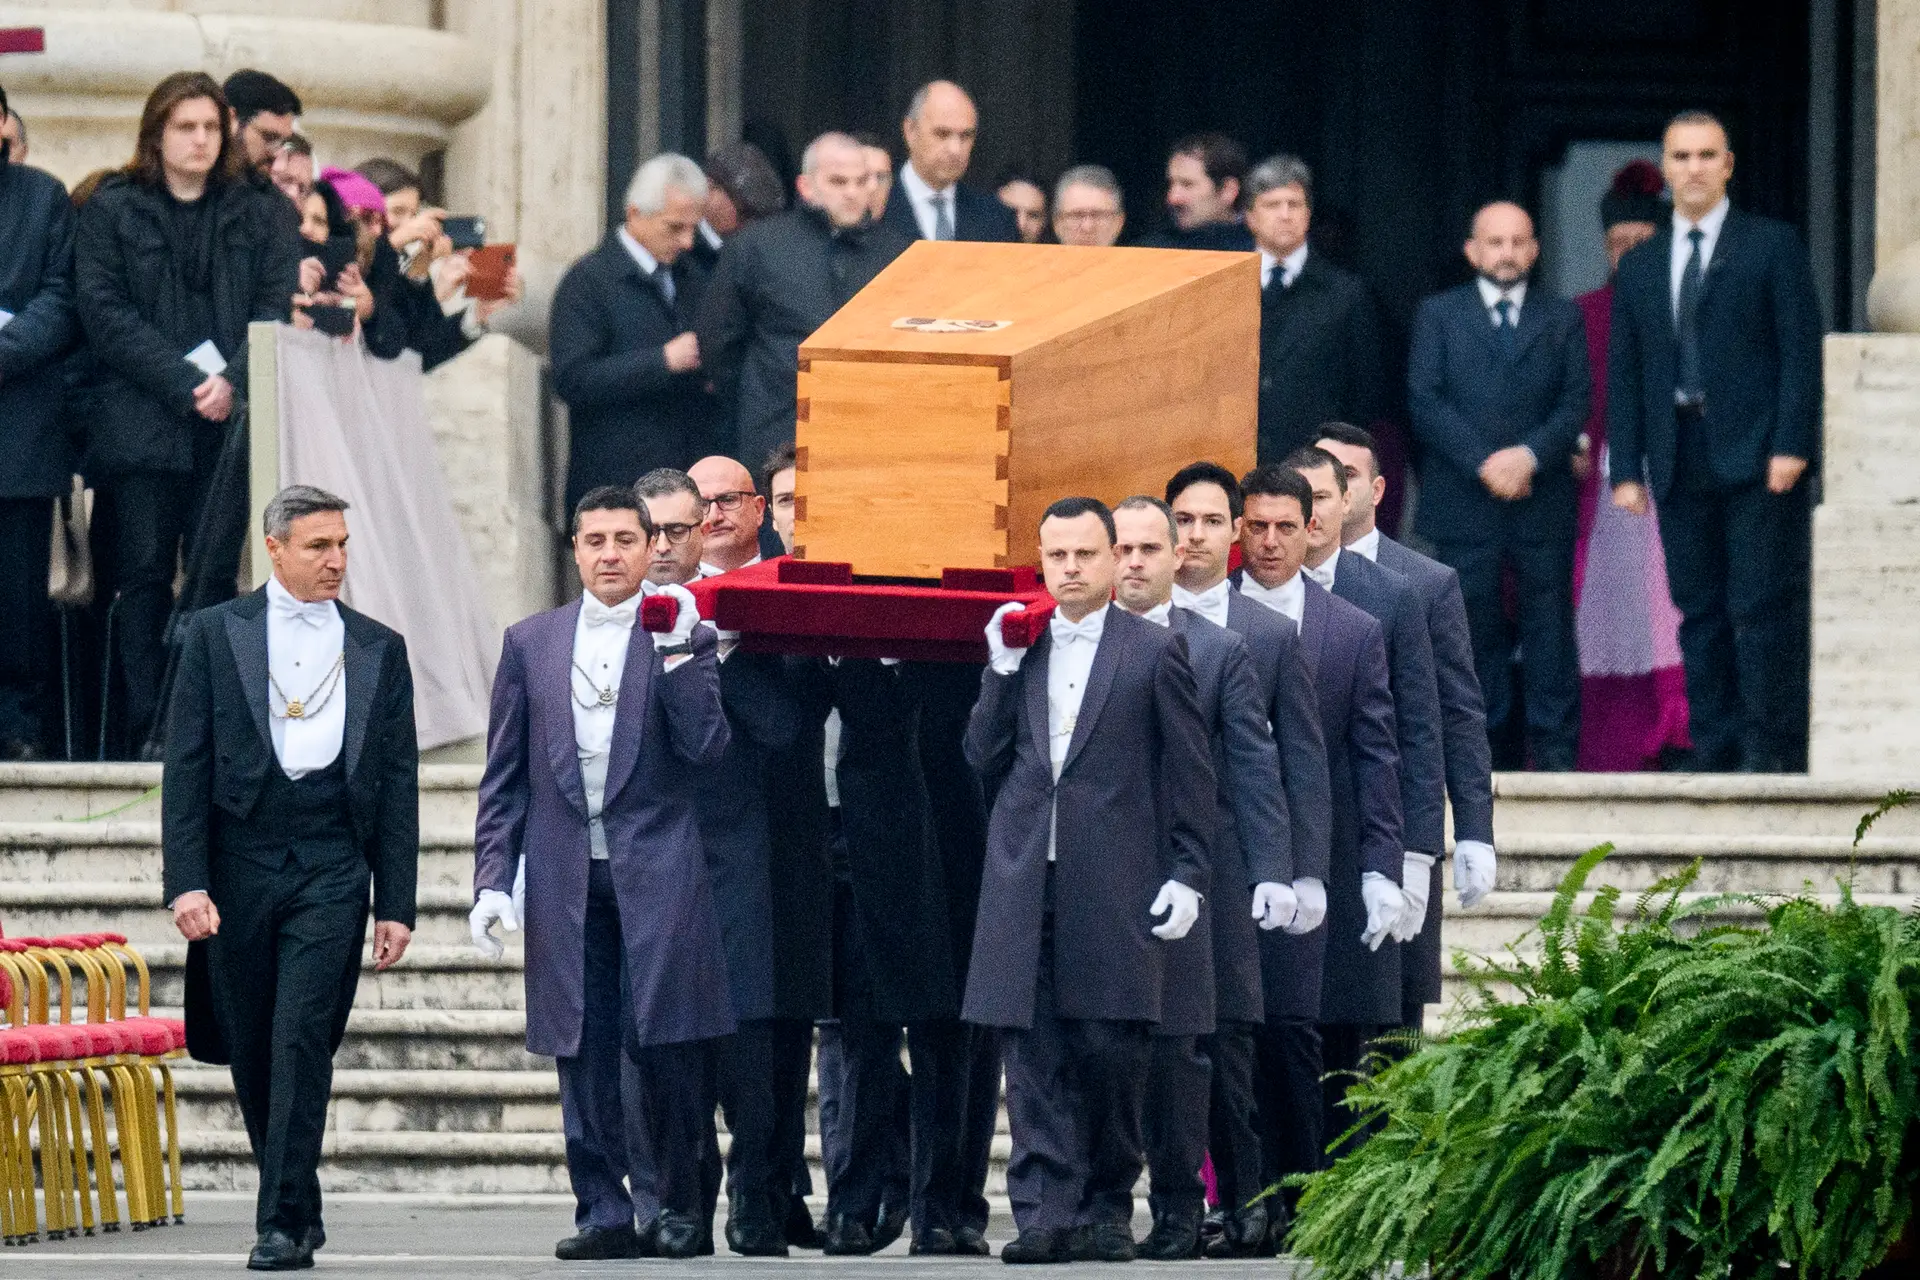 O caixão de cipestre foi carregado por 12 indivíduos, no início da missa do funeral que decorreu na Praça de São Pedro. O momento contou com aplausos do público.